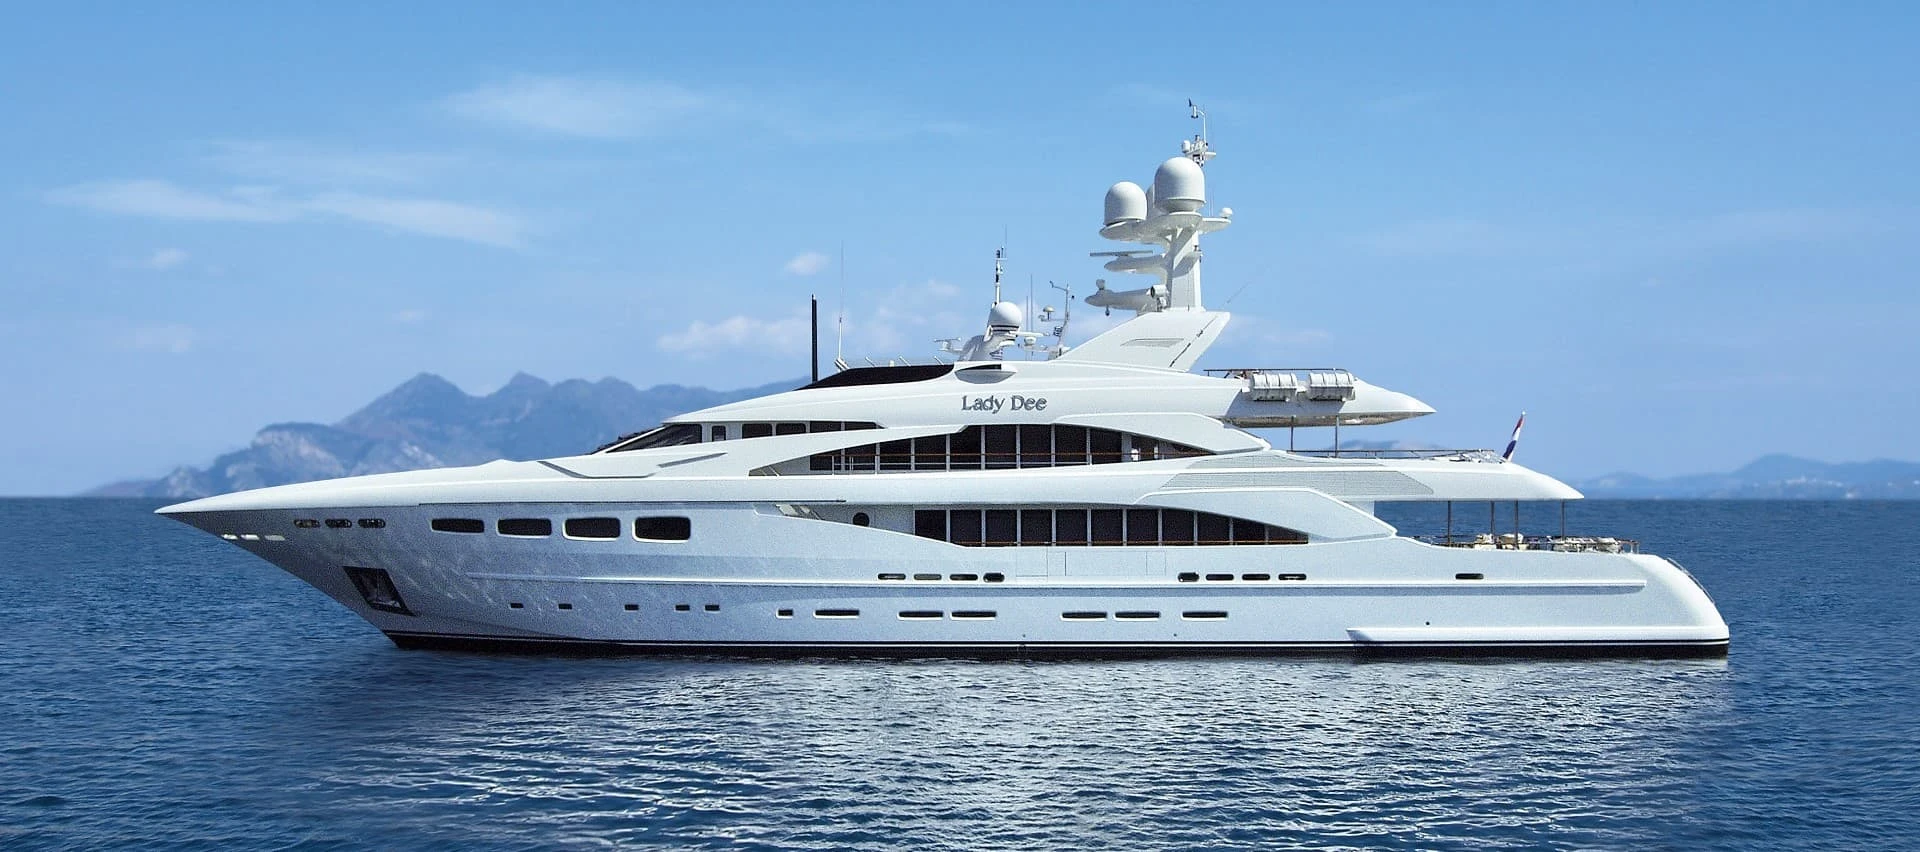 ete yachting, yacht charter turkey, perfomax marine, luxury yach